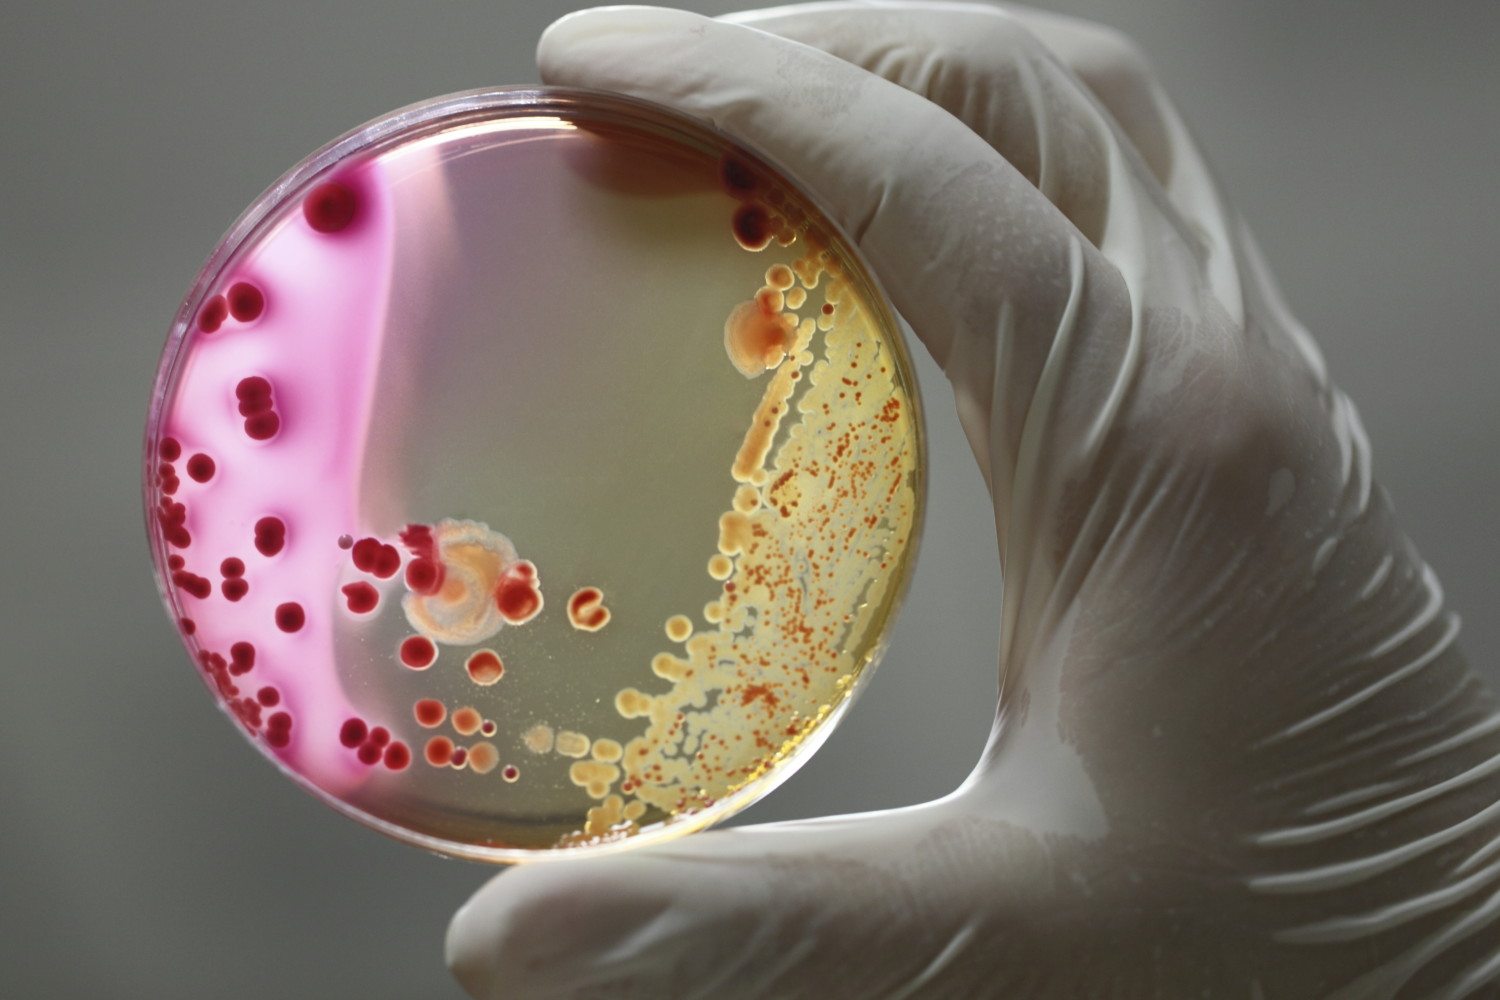 Бактериология, современные бактериологические методы исследований, 144 часа (повышение квалификации)